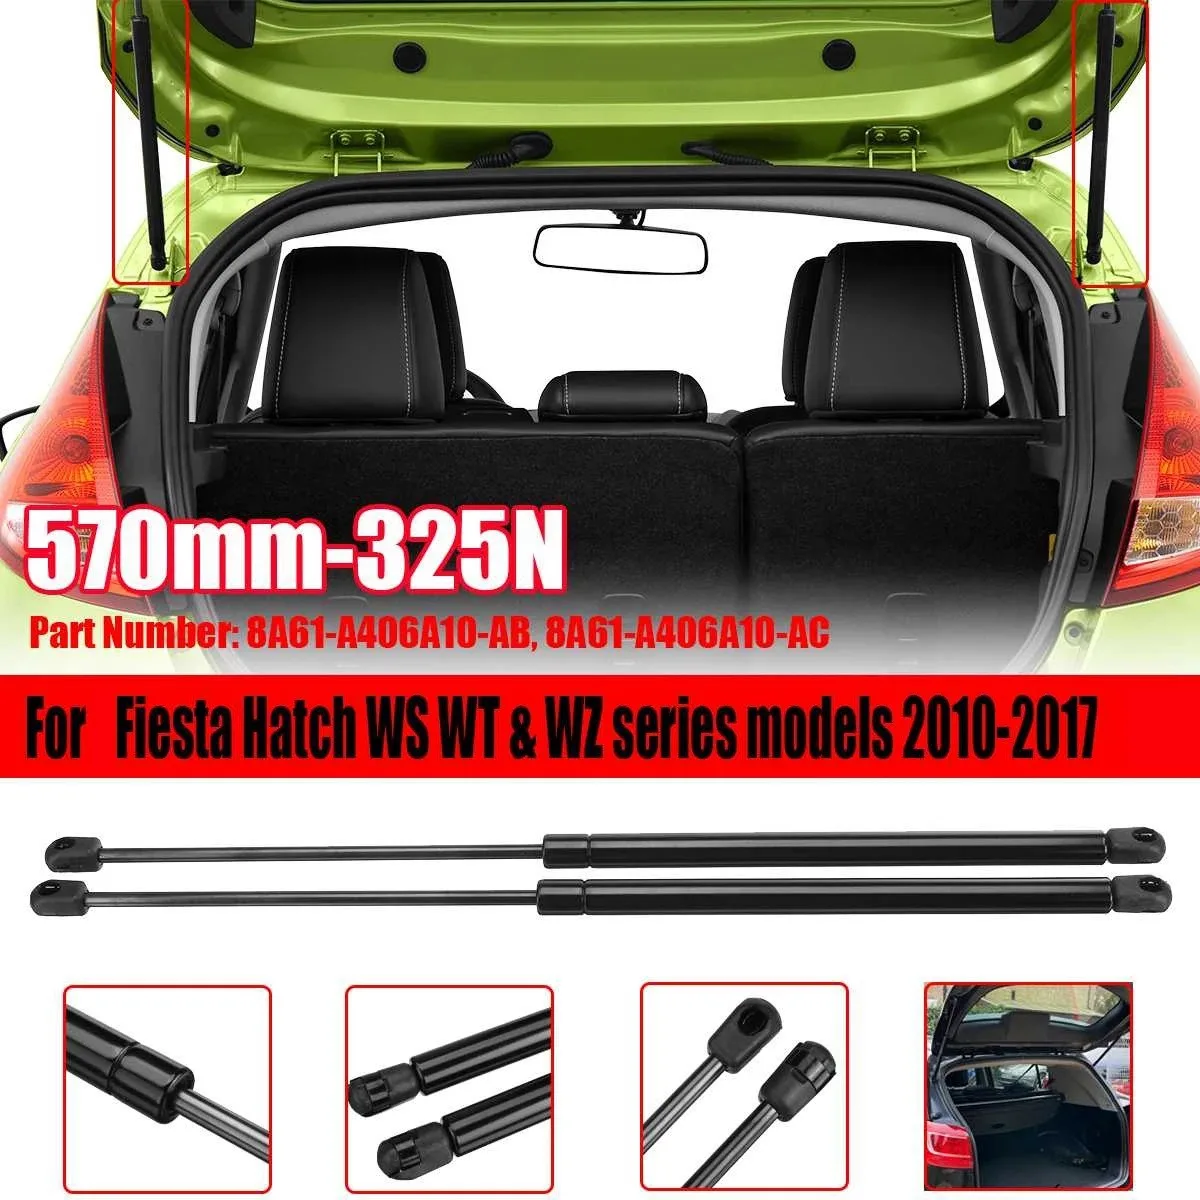 2шт Газовые Стойки Багажника Задней Двери Автомобиля Подъемная Газовая Пружина для Ford Fiesta Хэтчбек Модели Серии WS WT WZ 2010-2017 570 мм 325N